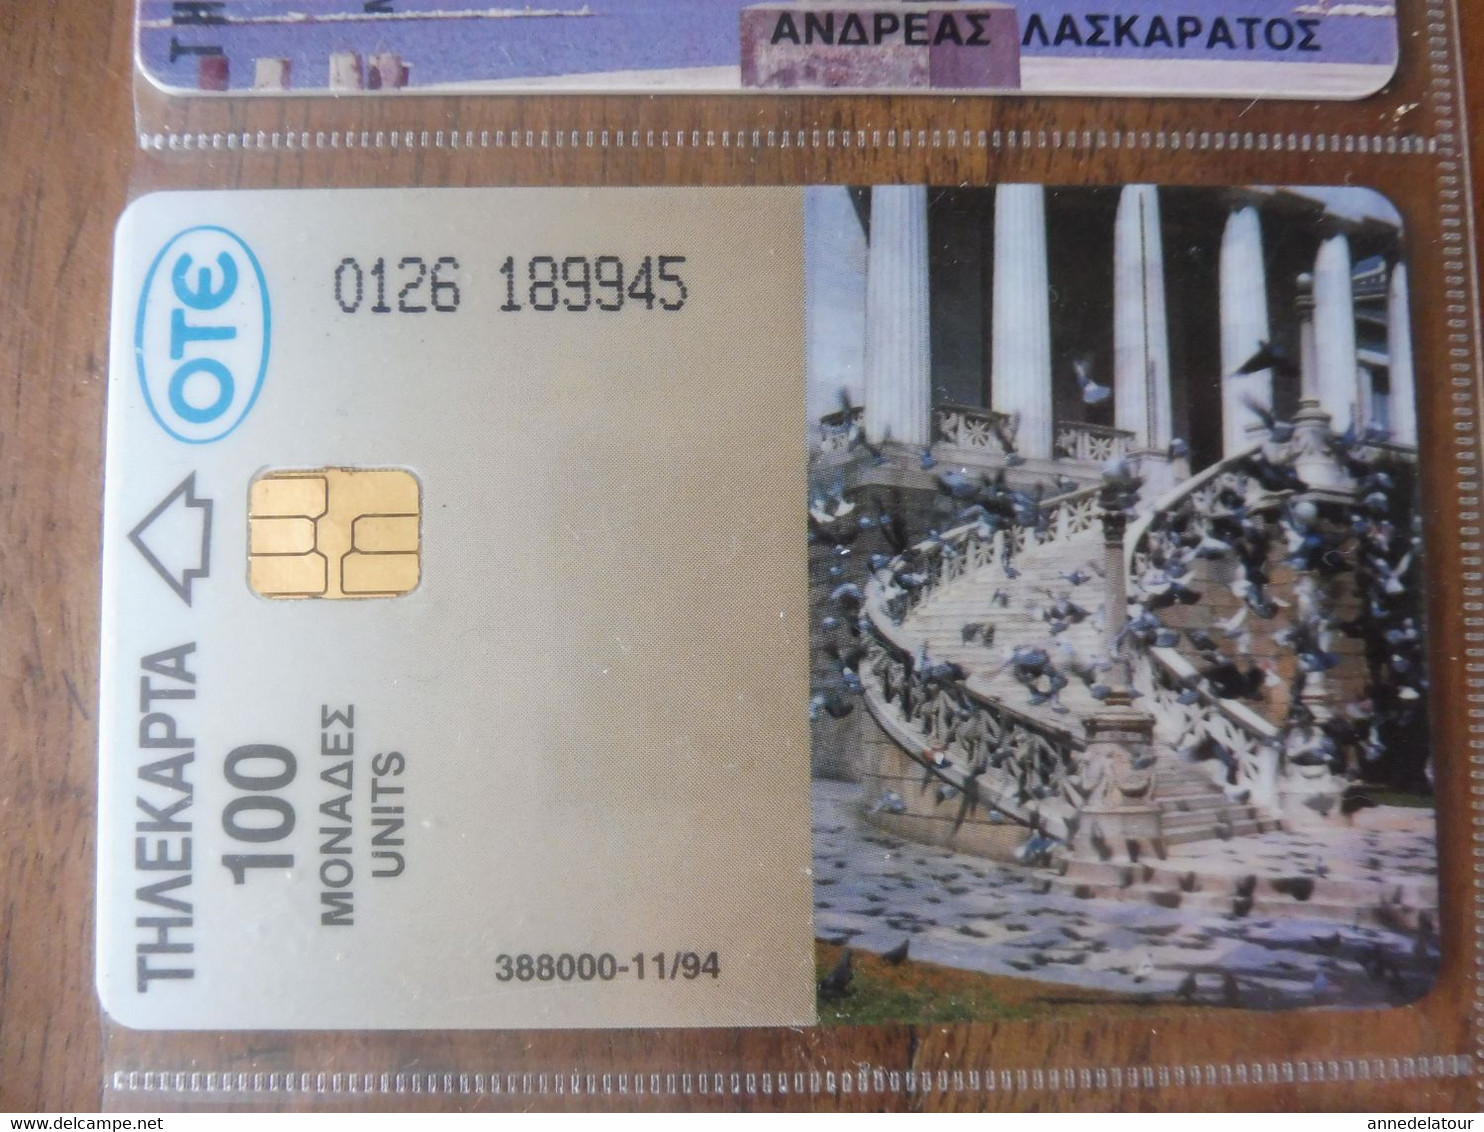 10 télécartes (cartes téléphoniques)  OTE  ΤΗΛΕΚΑΡΤΑ     Origine Grèce